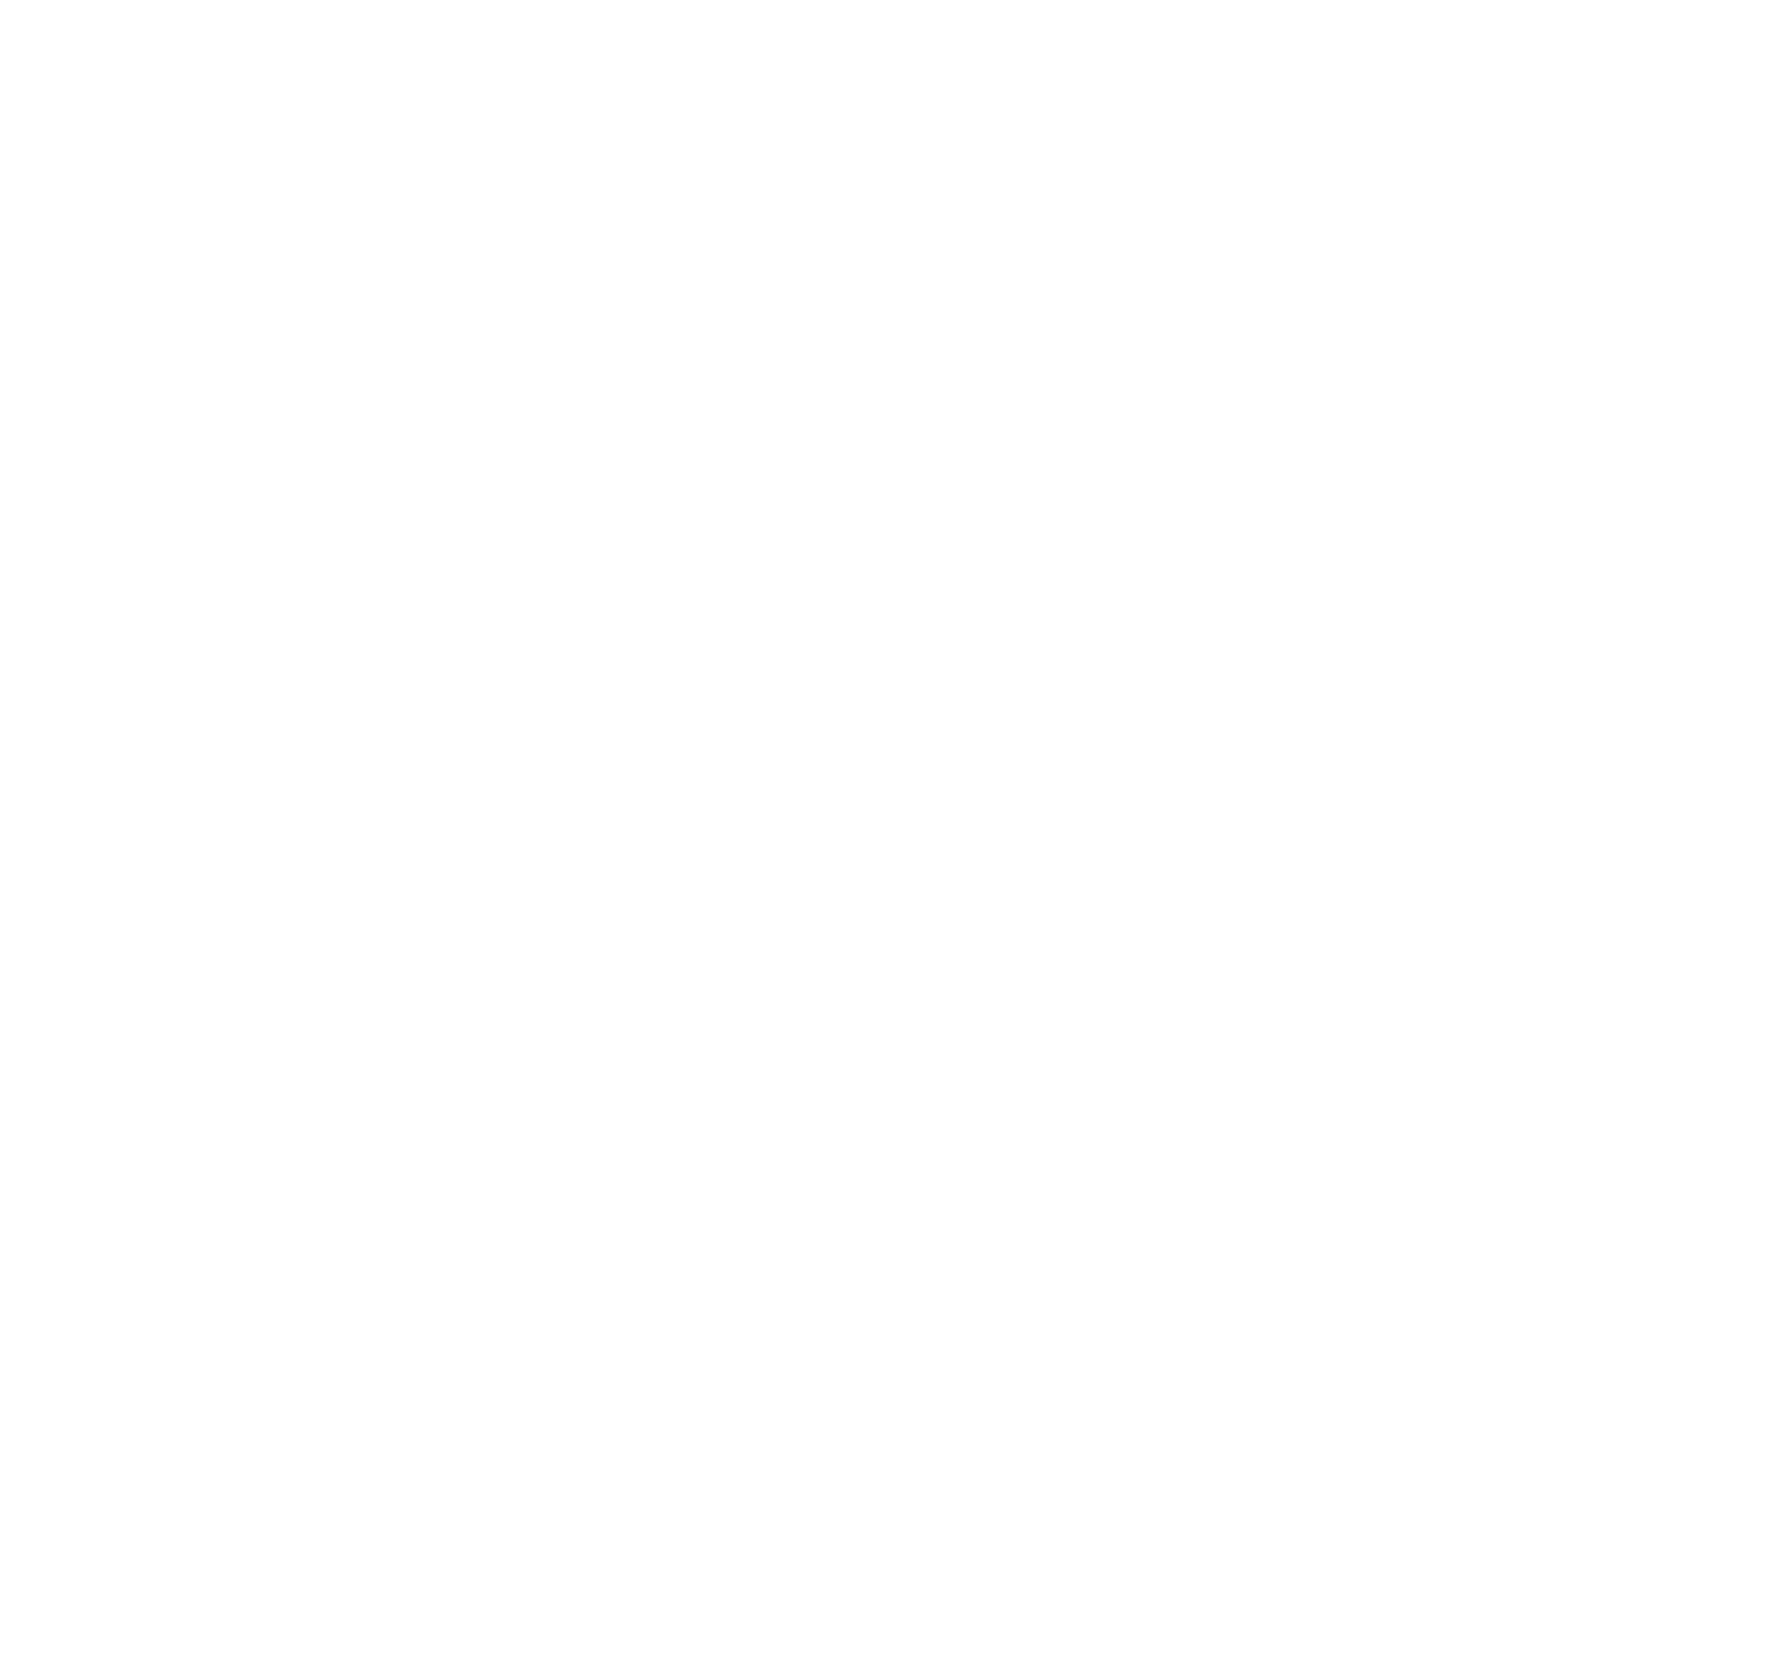 INY studio